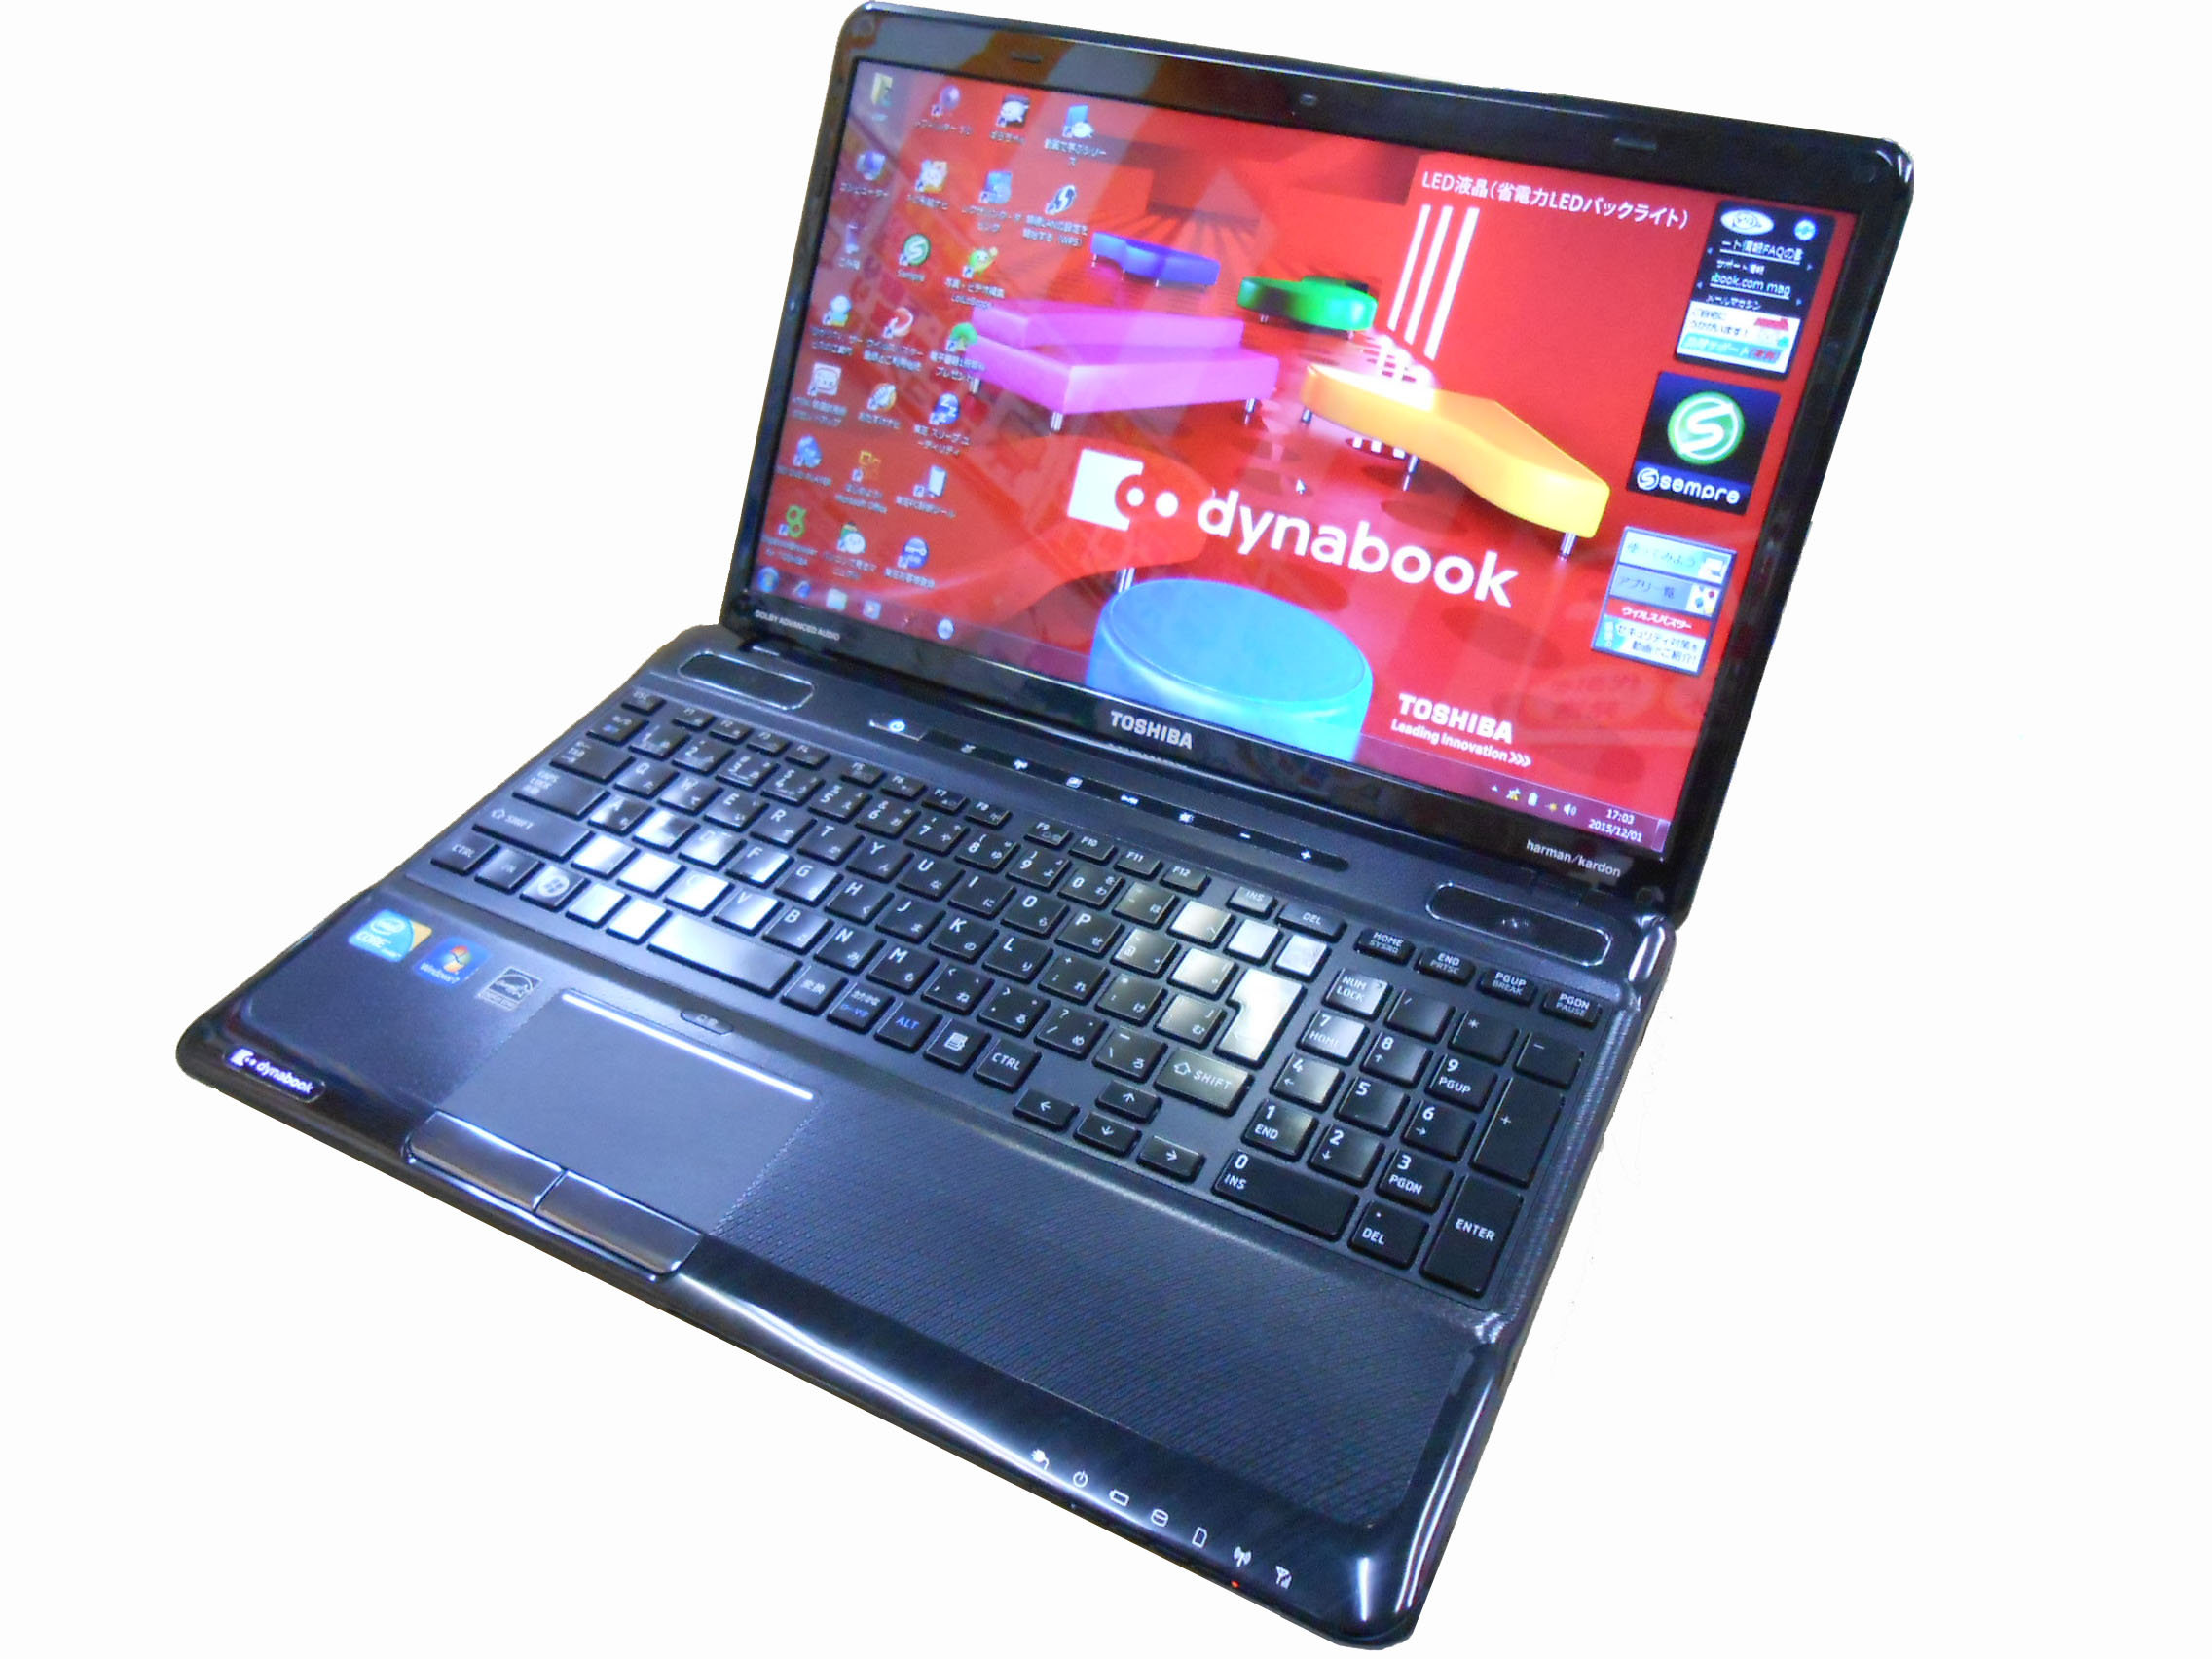 東芝 dynabook T560/58AB CPU:Core i7 Q710 1.73GHz/メモリ:4GB/HDD